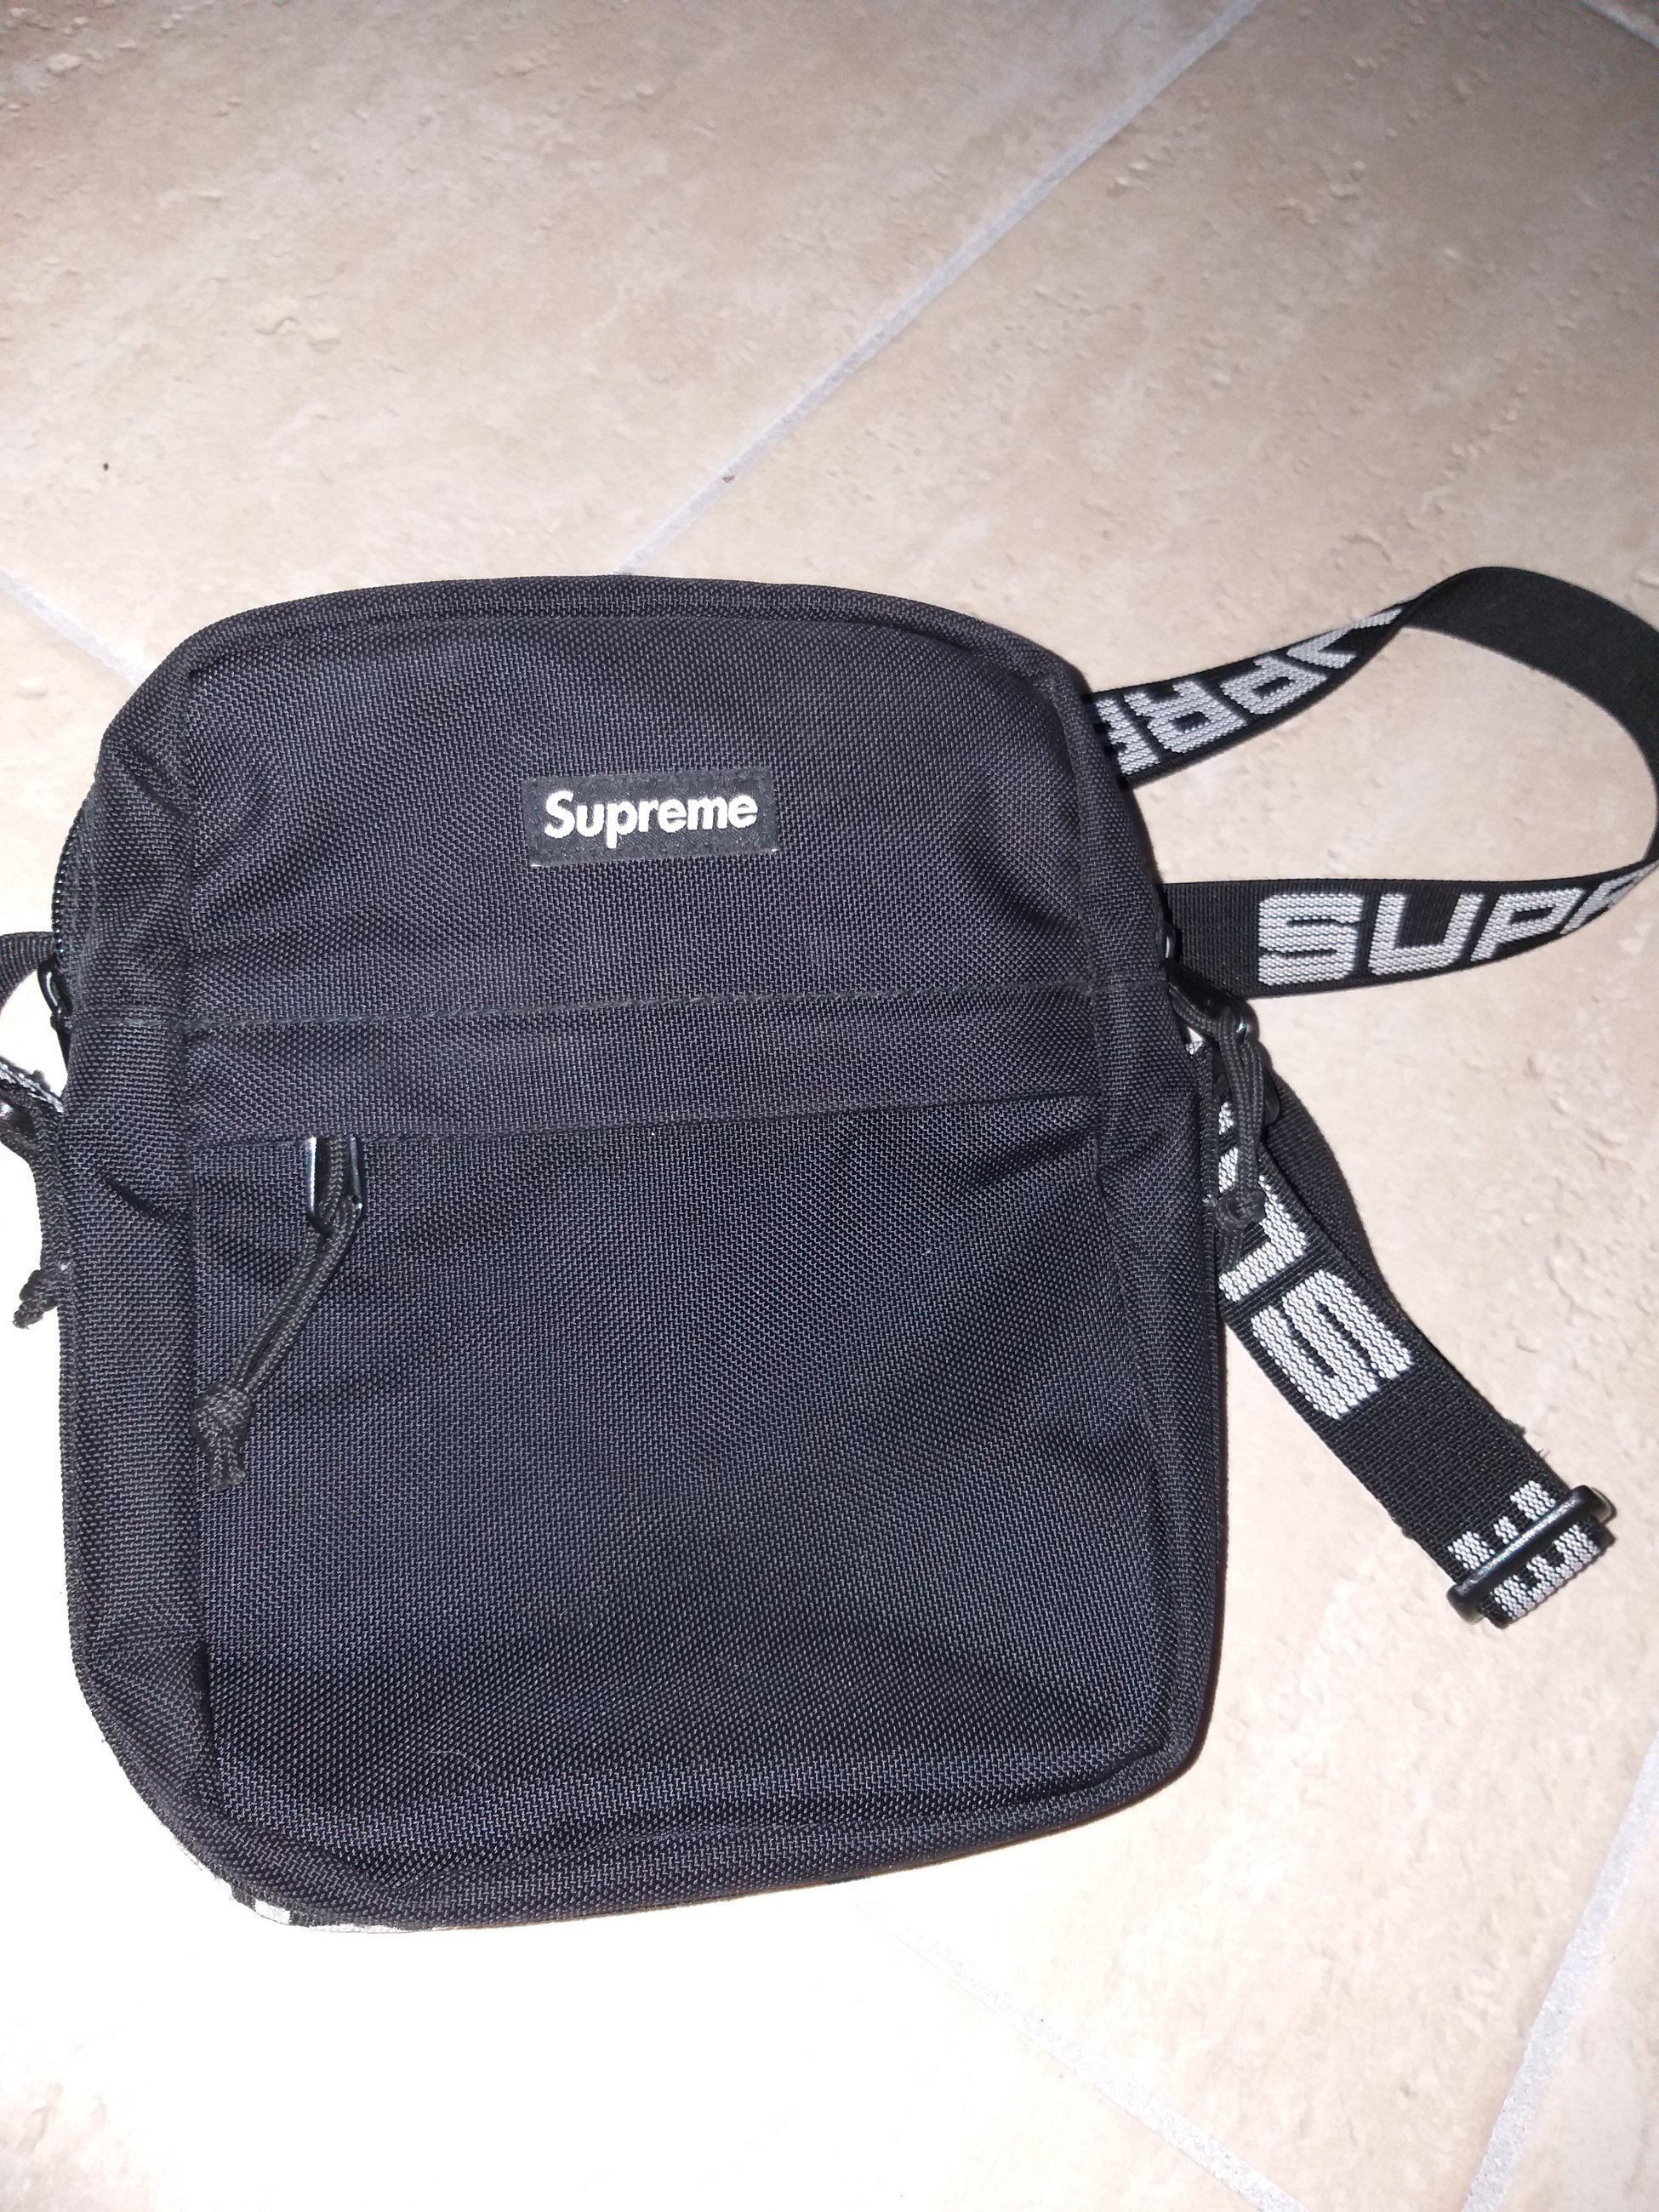 Supreme shoulder bag Ss18 - Meetapp